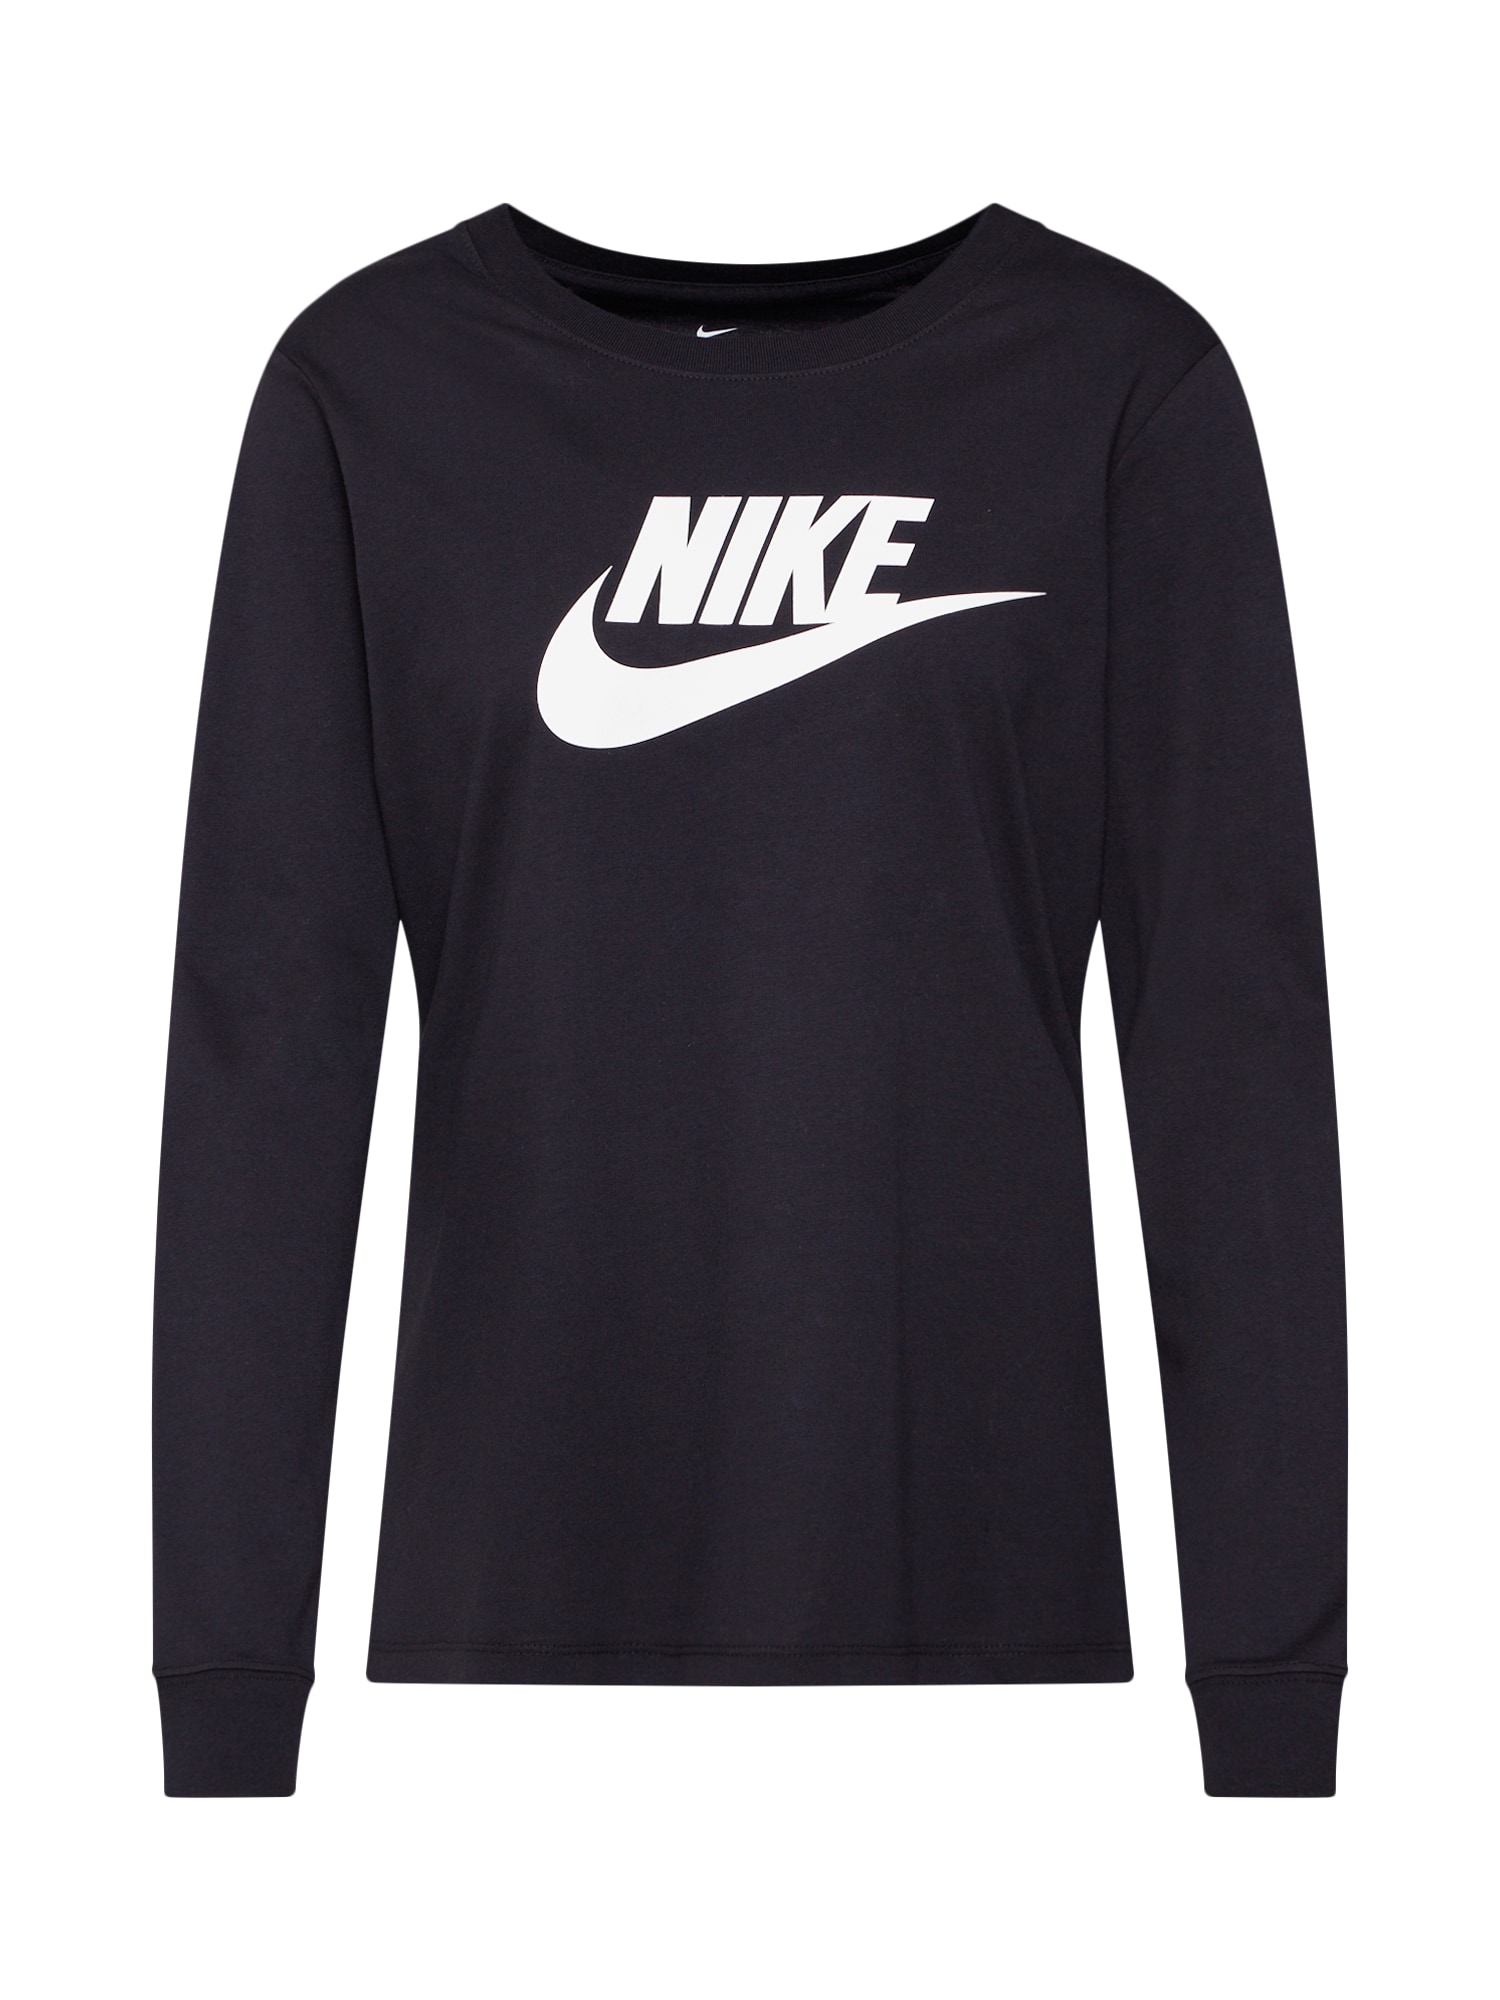 Nike Sportswear Marškinėliai 'Essential' juoda / balta